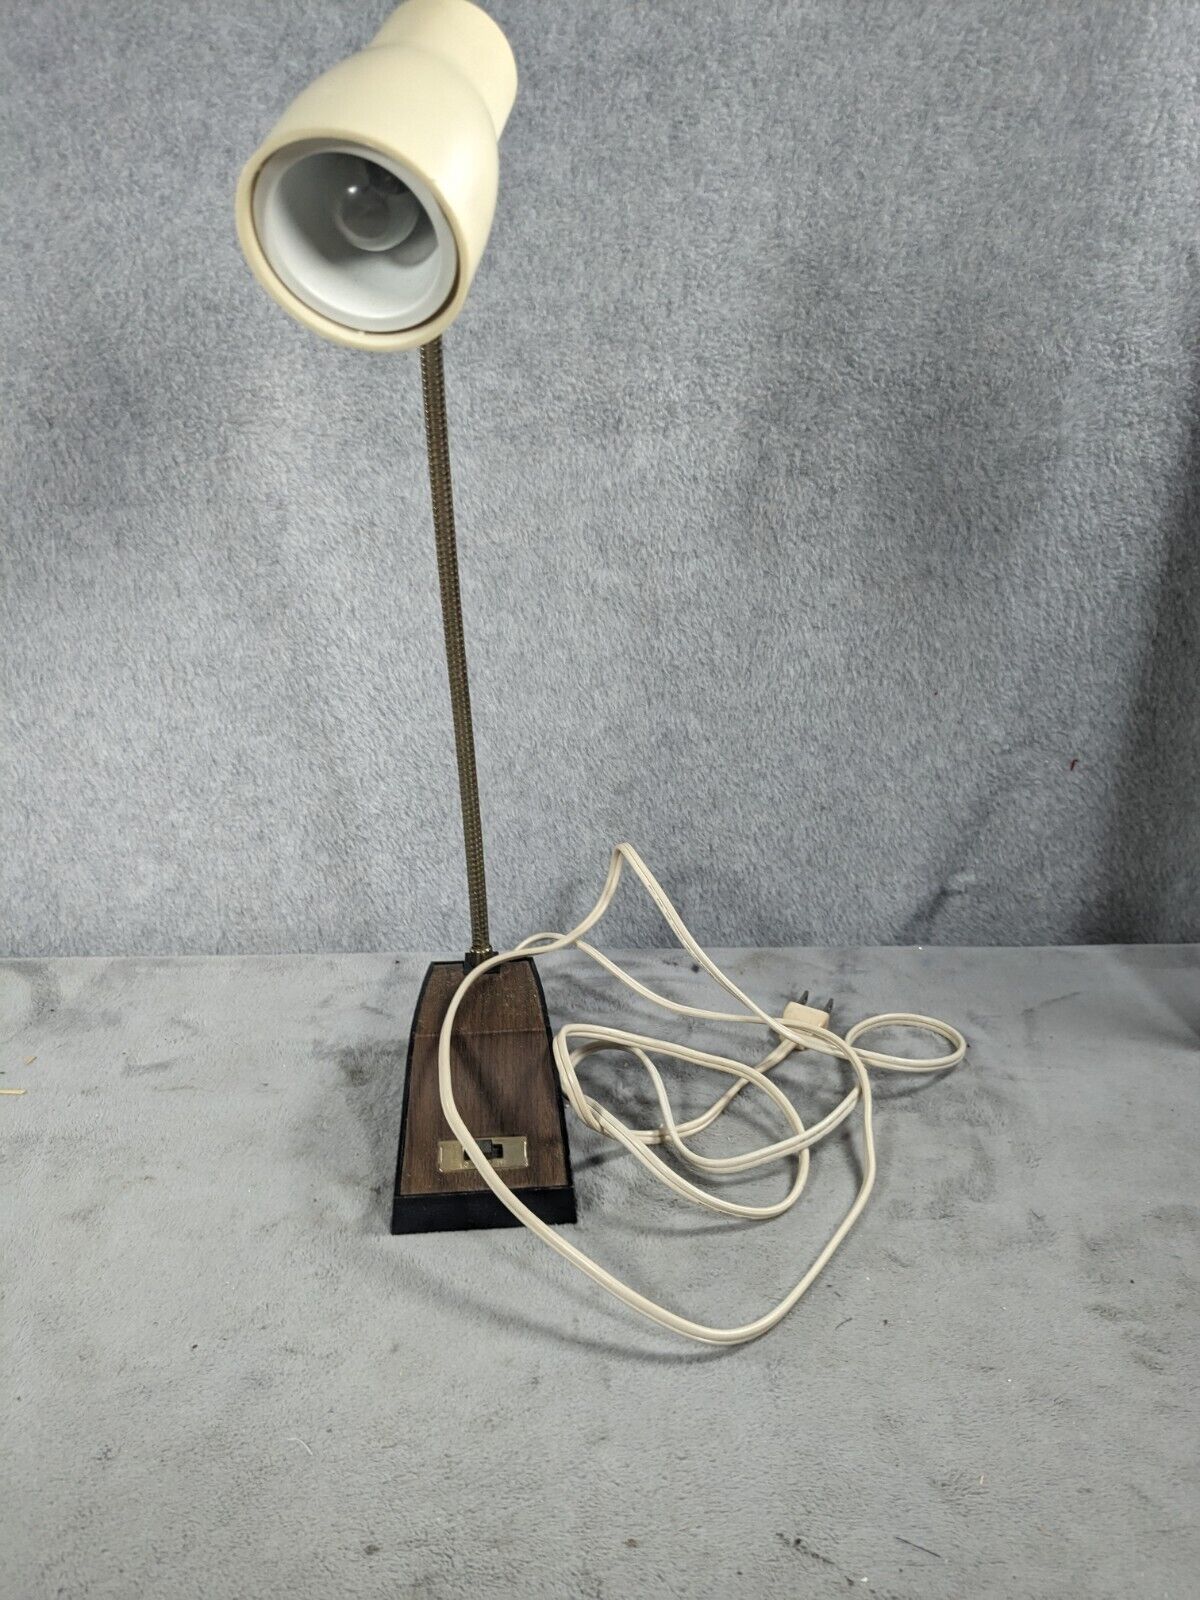 Vintage Universal Lamp Co 1967 Flex Neck Light Model U-720HL